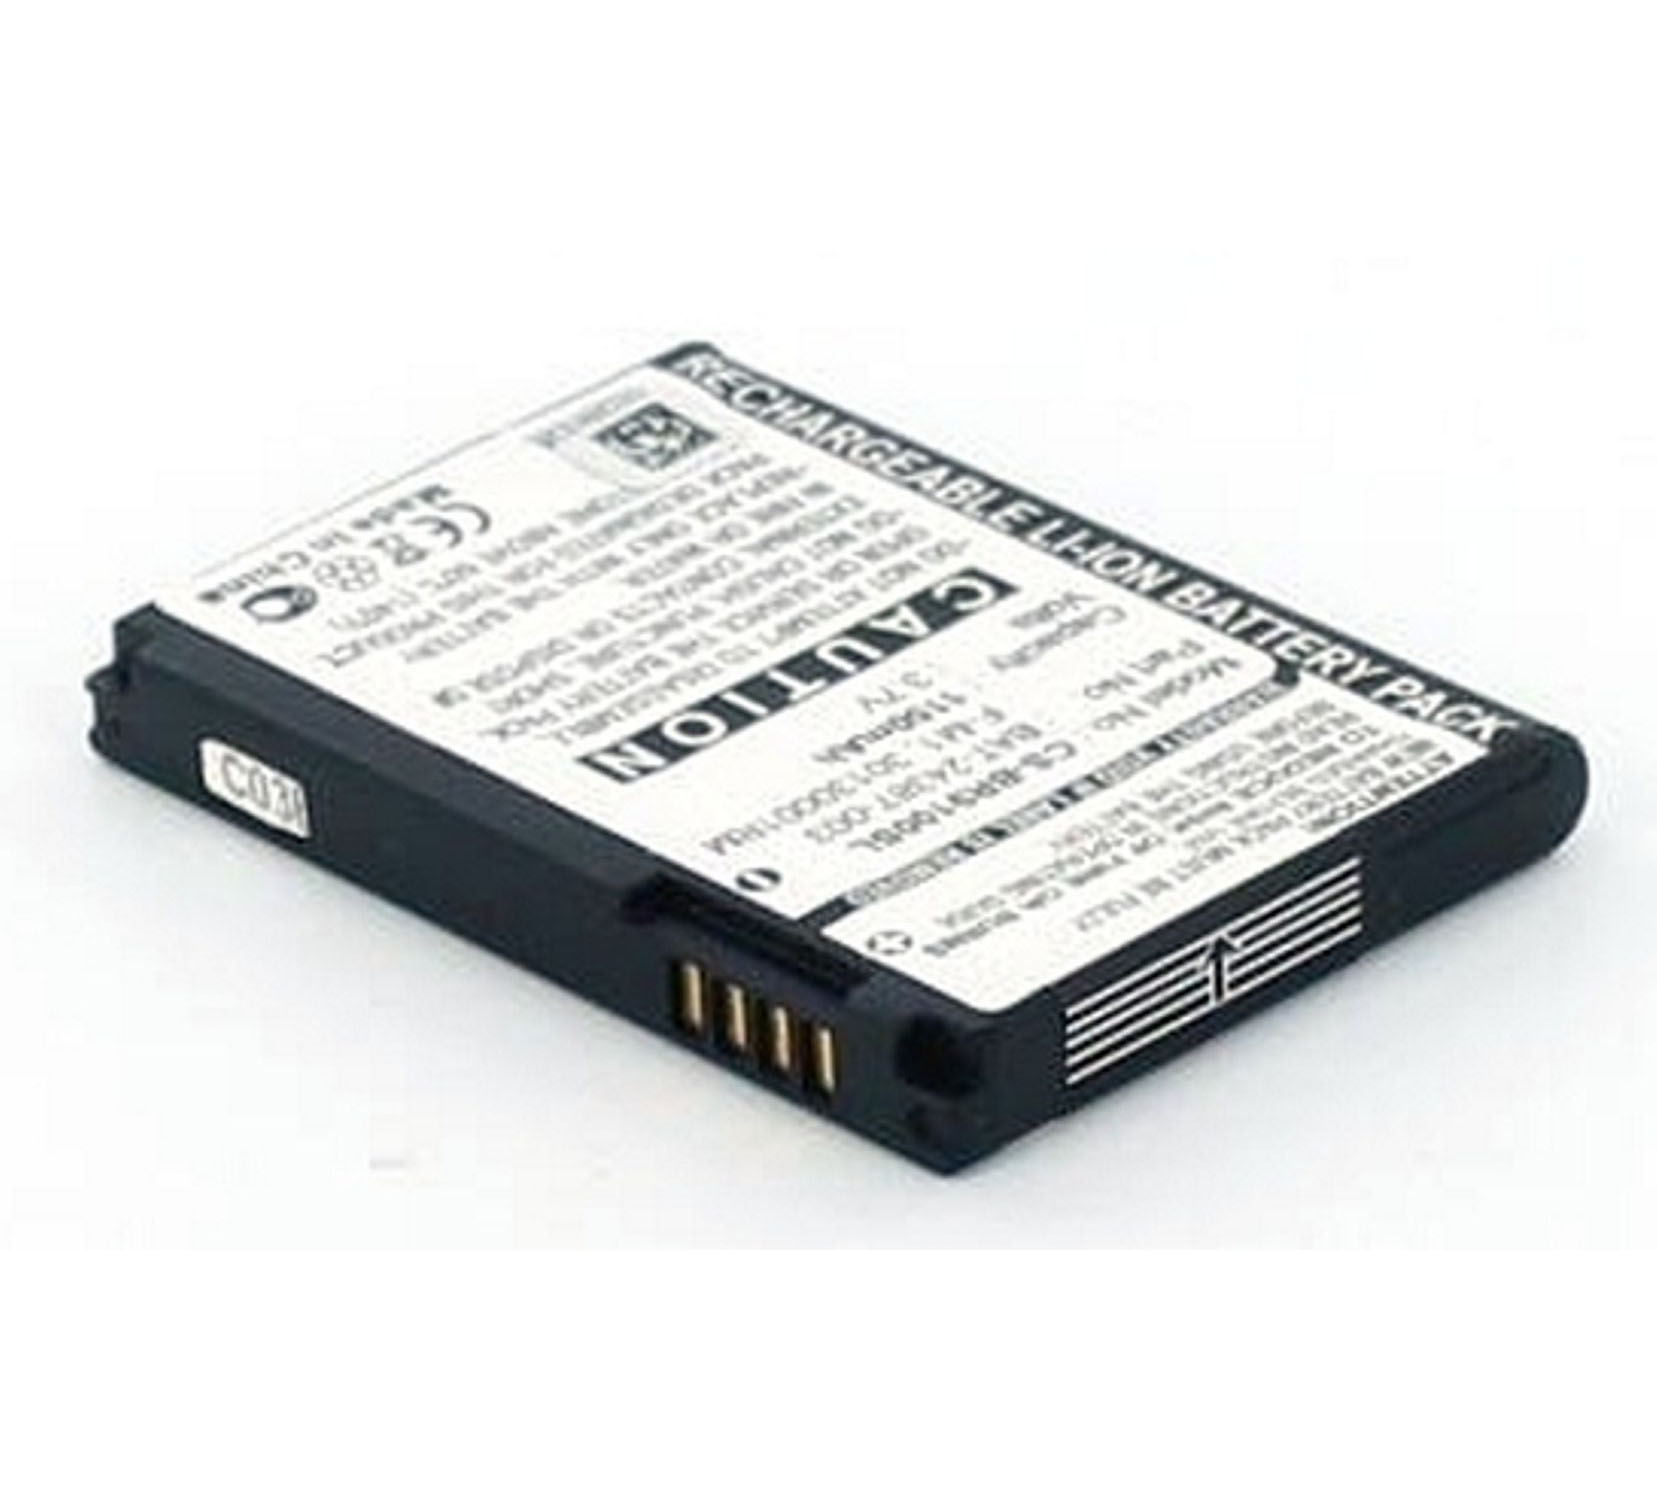 Li-Ion Li-Ion, 2 1100 3.7 F-M1|Stratus|Striker|Pearl Volt, mAh AGI Akku Blackberry mit Handy-/Smartphoneakku, kompatibel